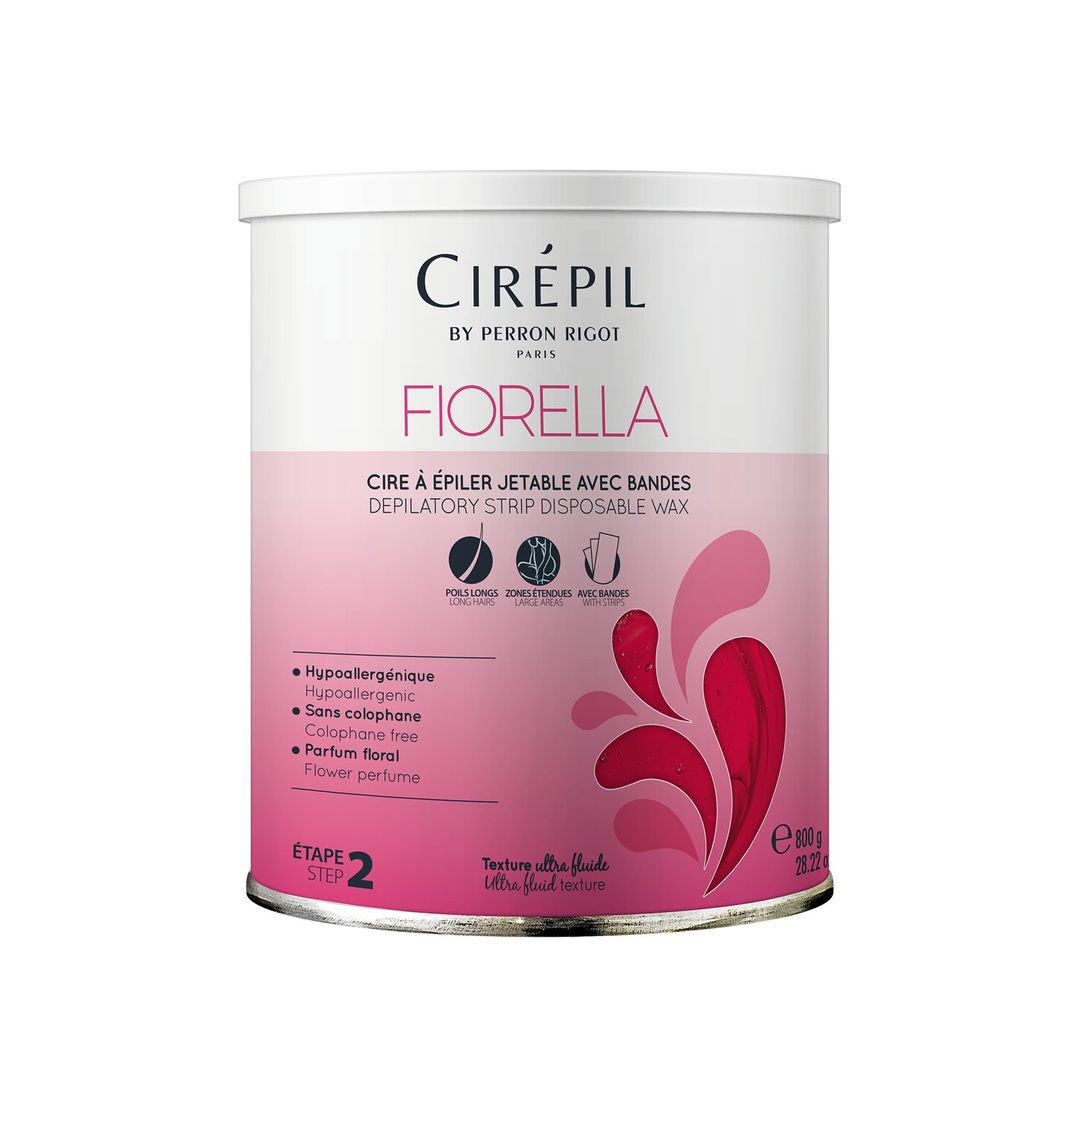 Теплый воск Fiorella Cirepil (Фиорелла), 800 г фото 